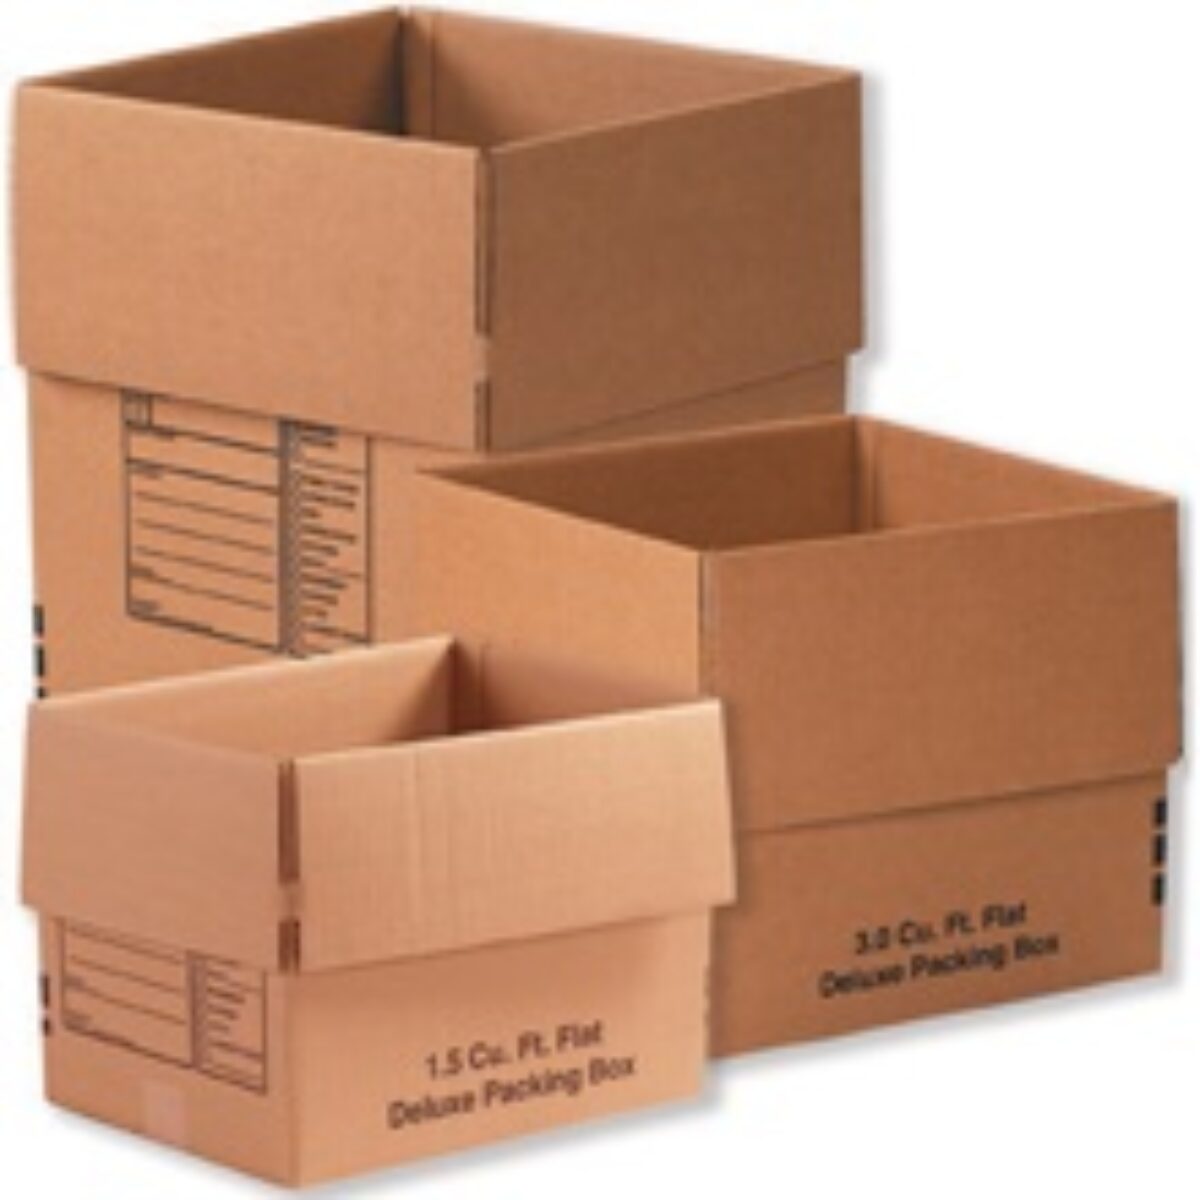 Boxes Wholesale, Brandt Box